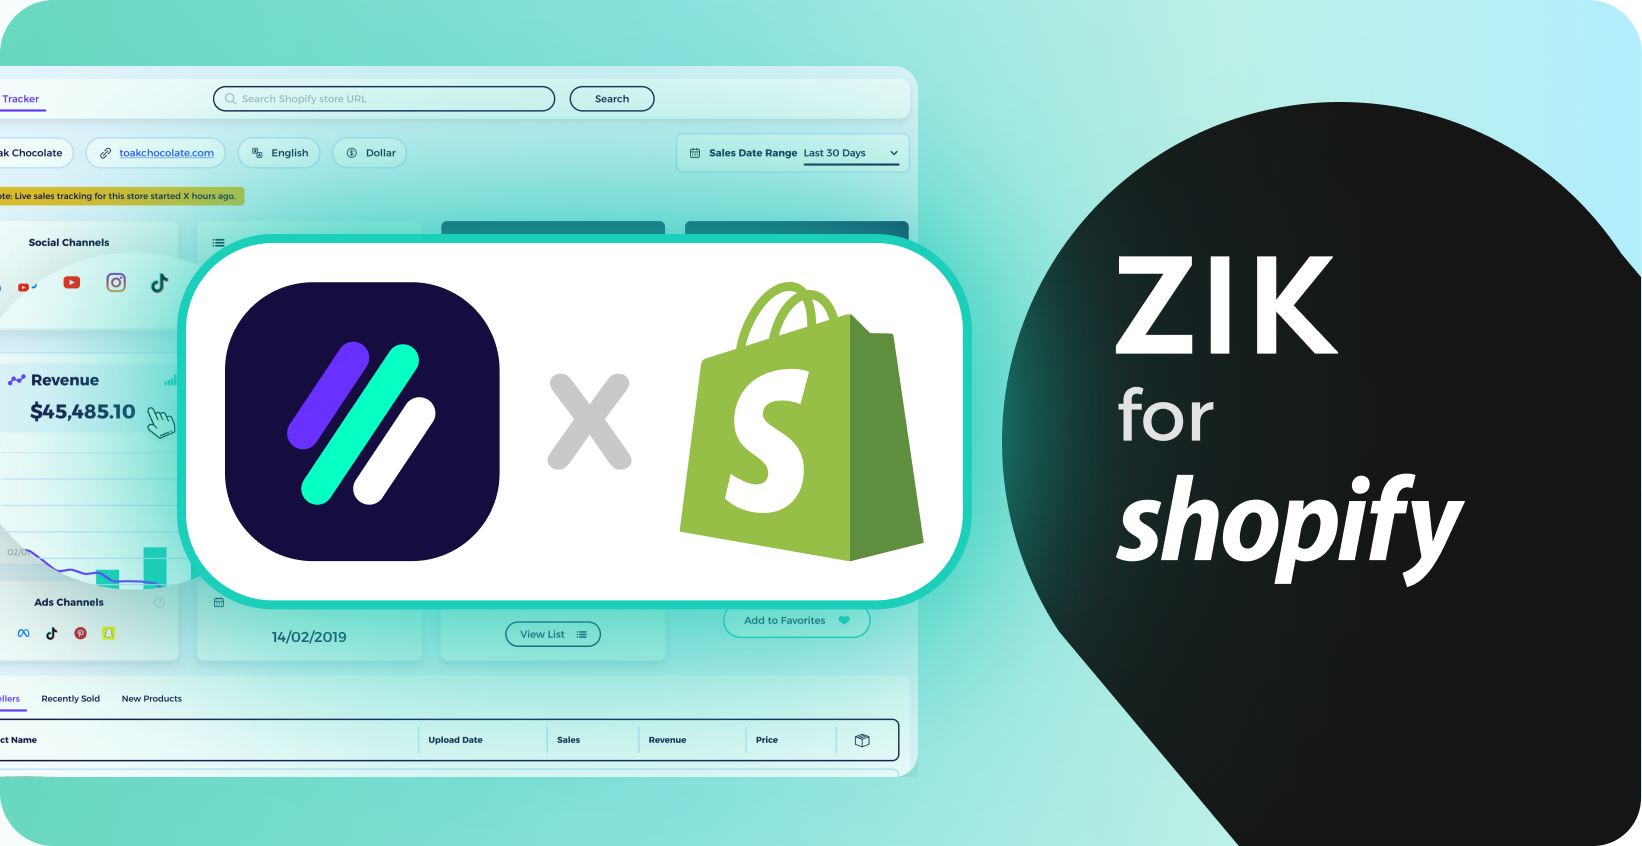 Launching Shopify on ZIK